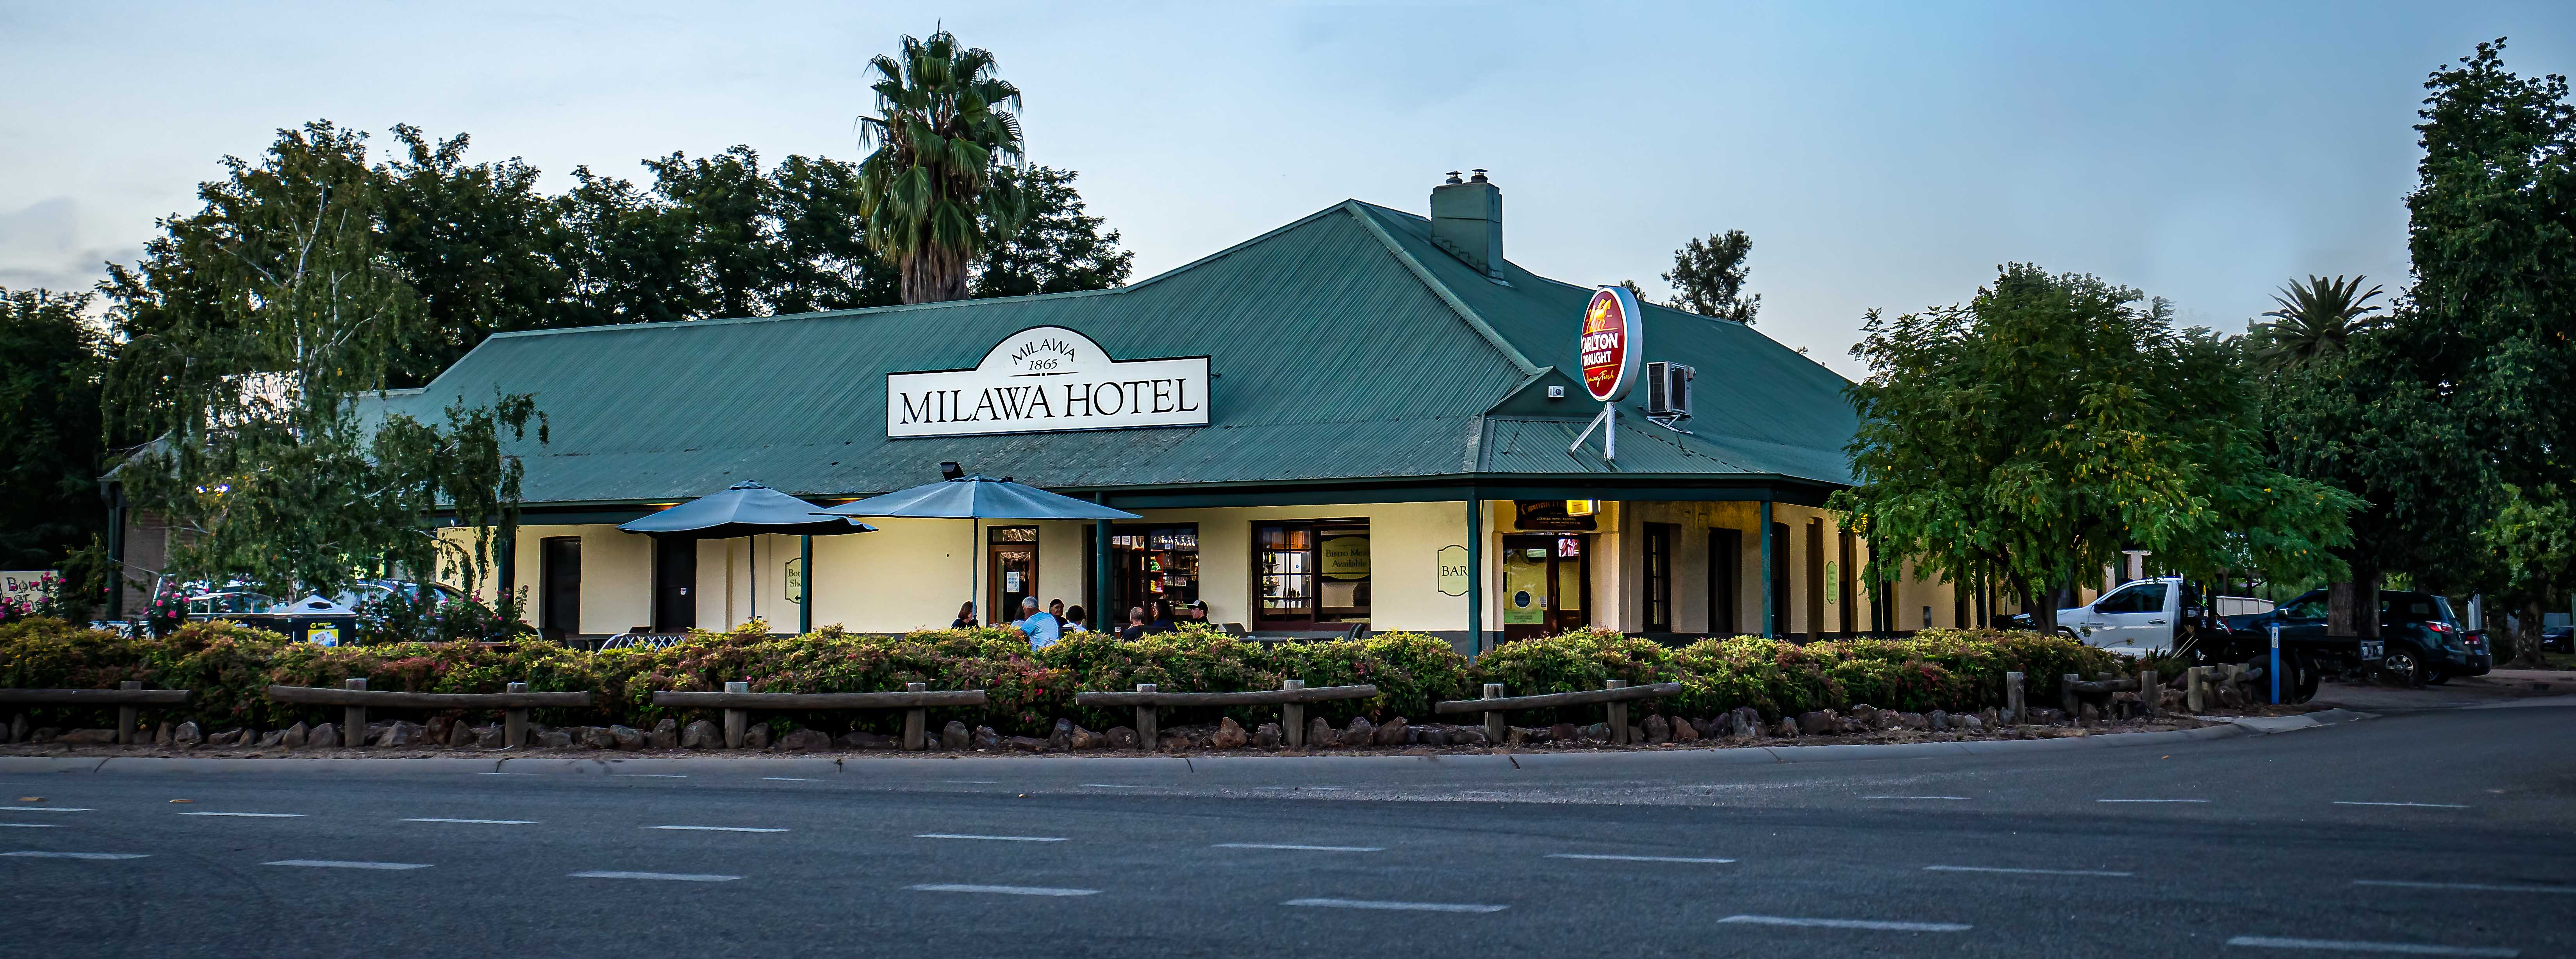 Milawa Hotel and drive through bottleshop | Milawa Hotel, 1591 Snow Rd, Milawa VIC 3678, Australia | Phone: (03) 5727 3208